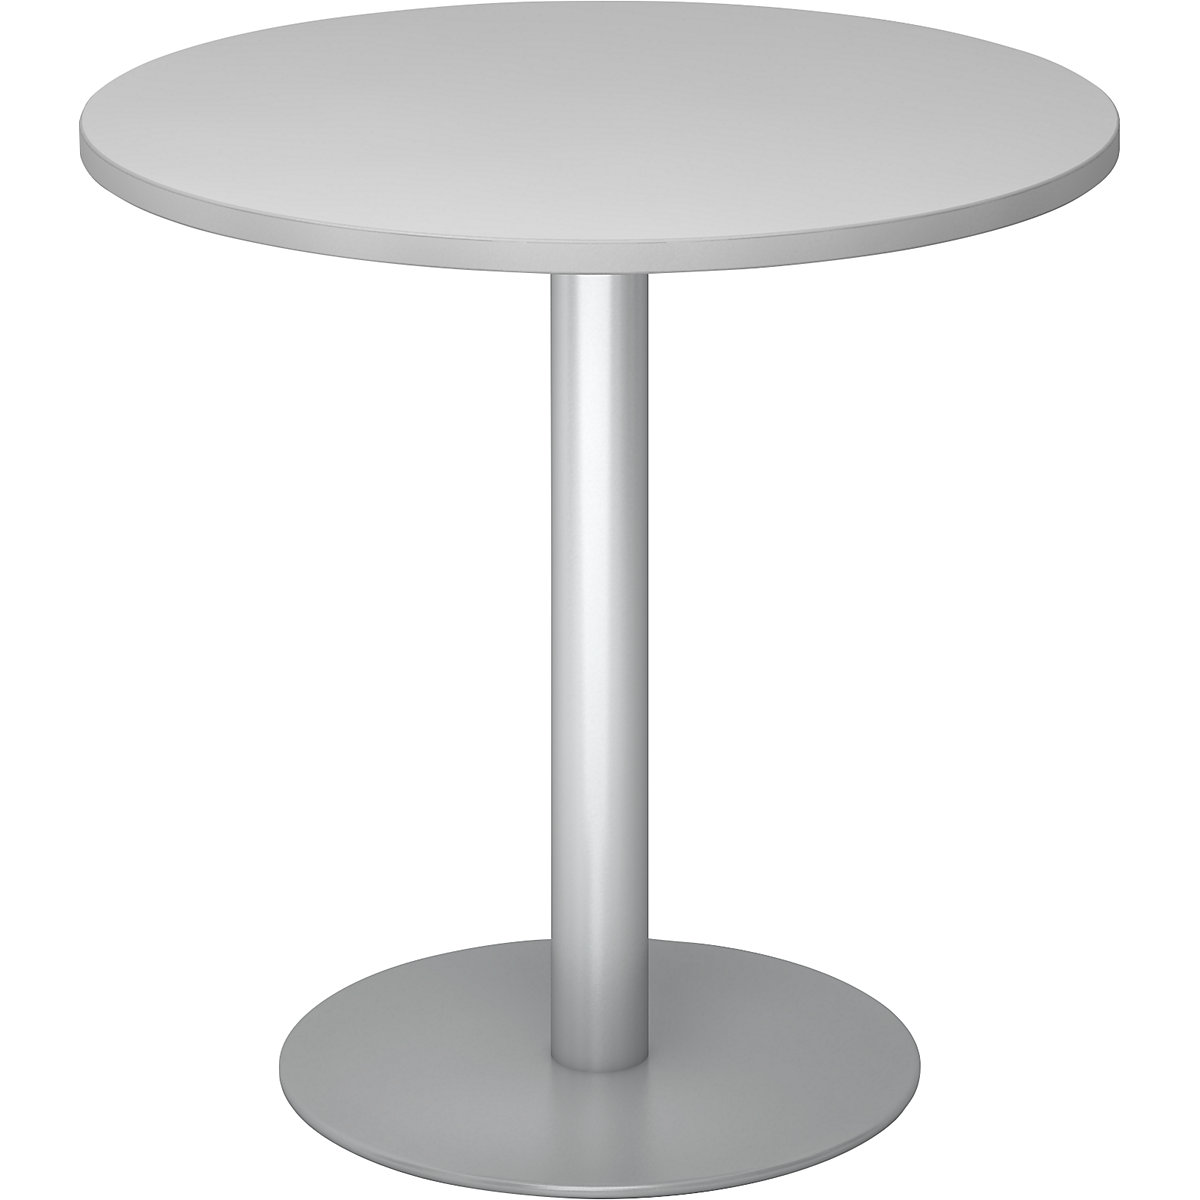 Konferenčna miza, Ø 800 mm